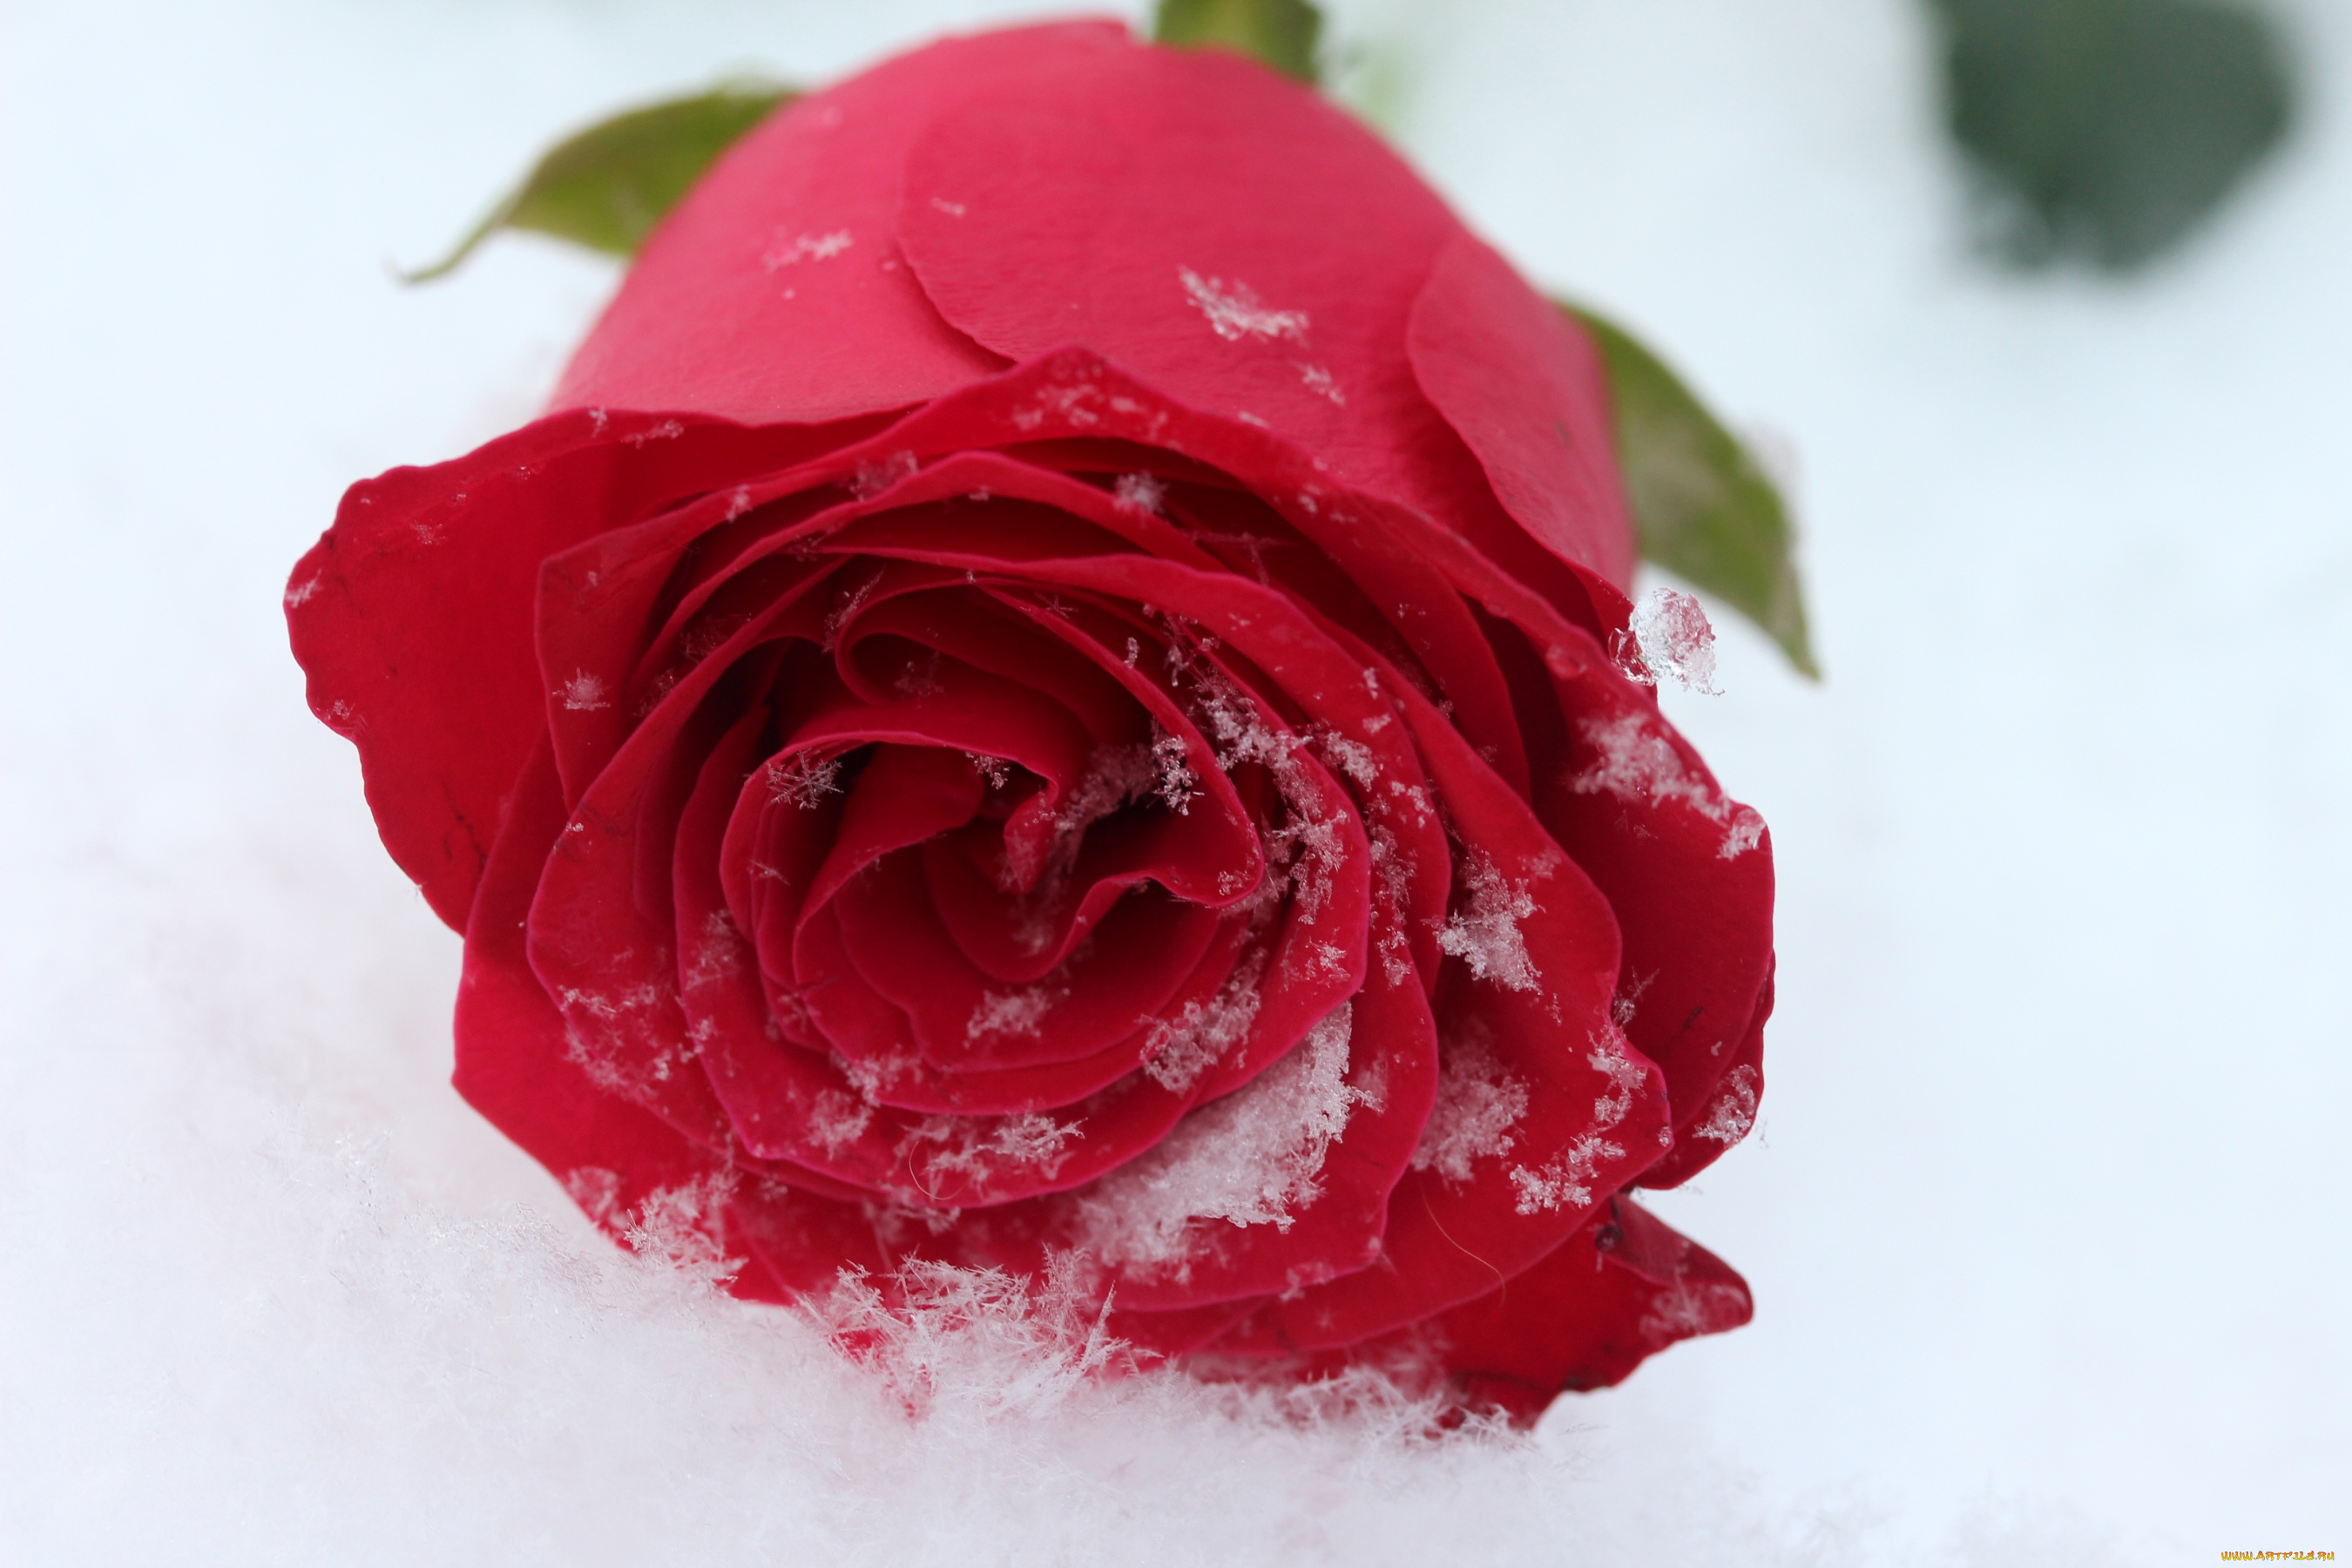 цветы, розы, снег